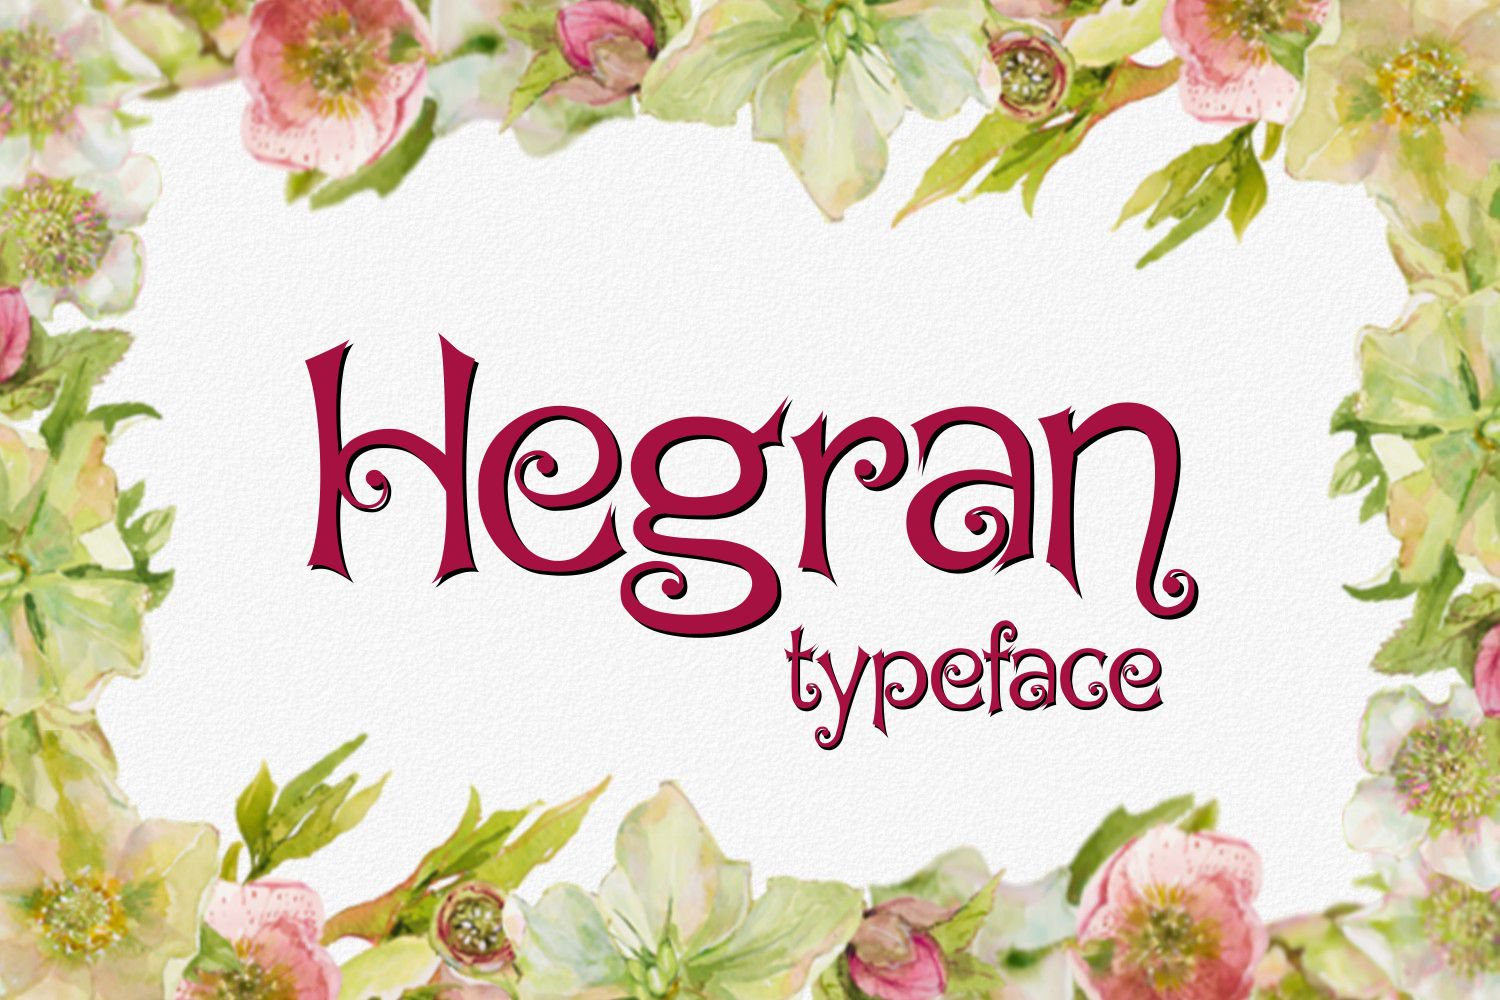 Hegran